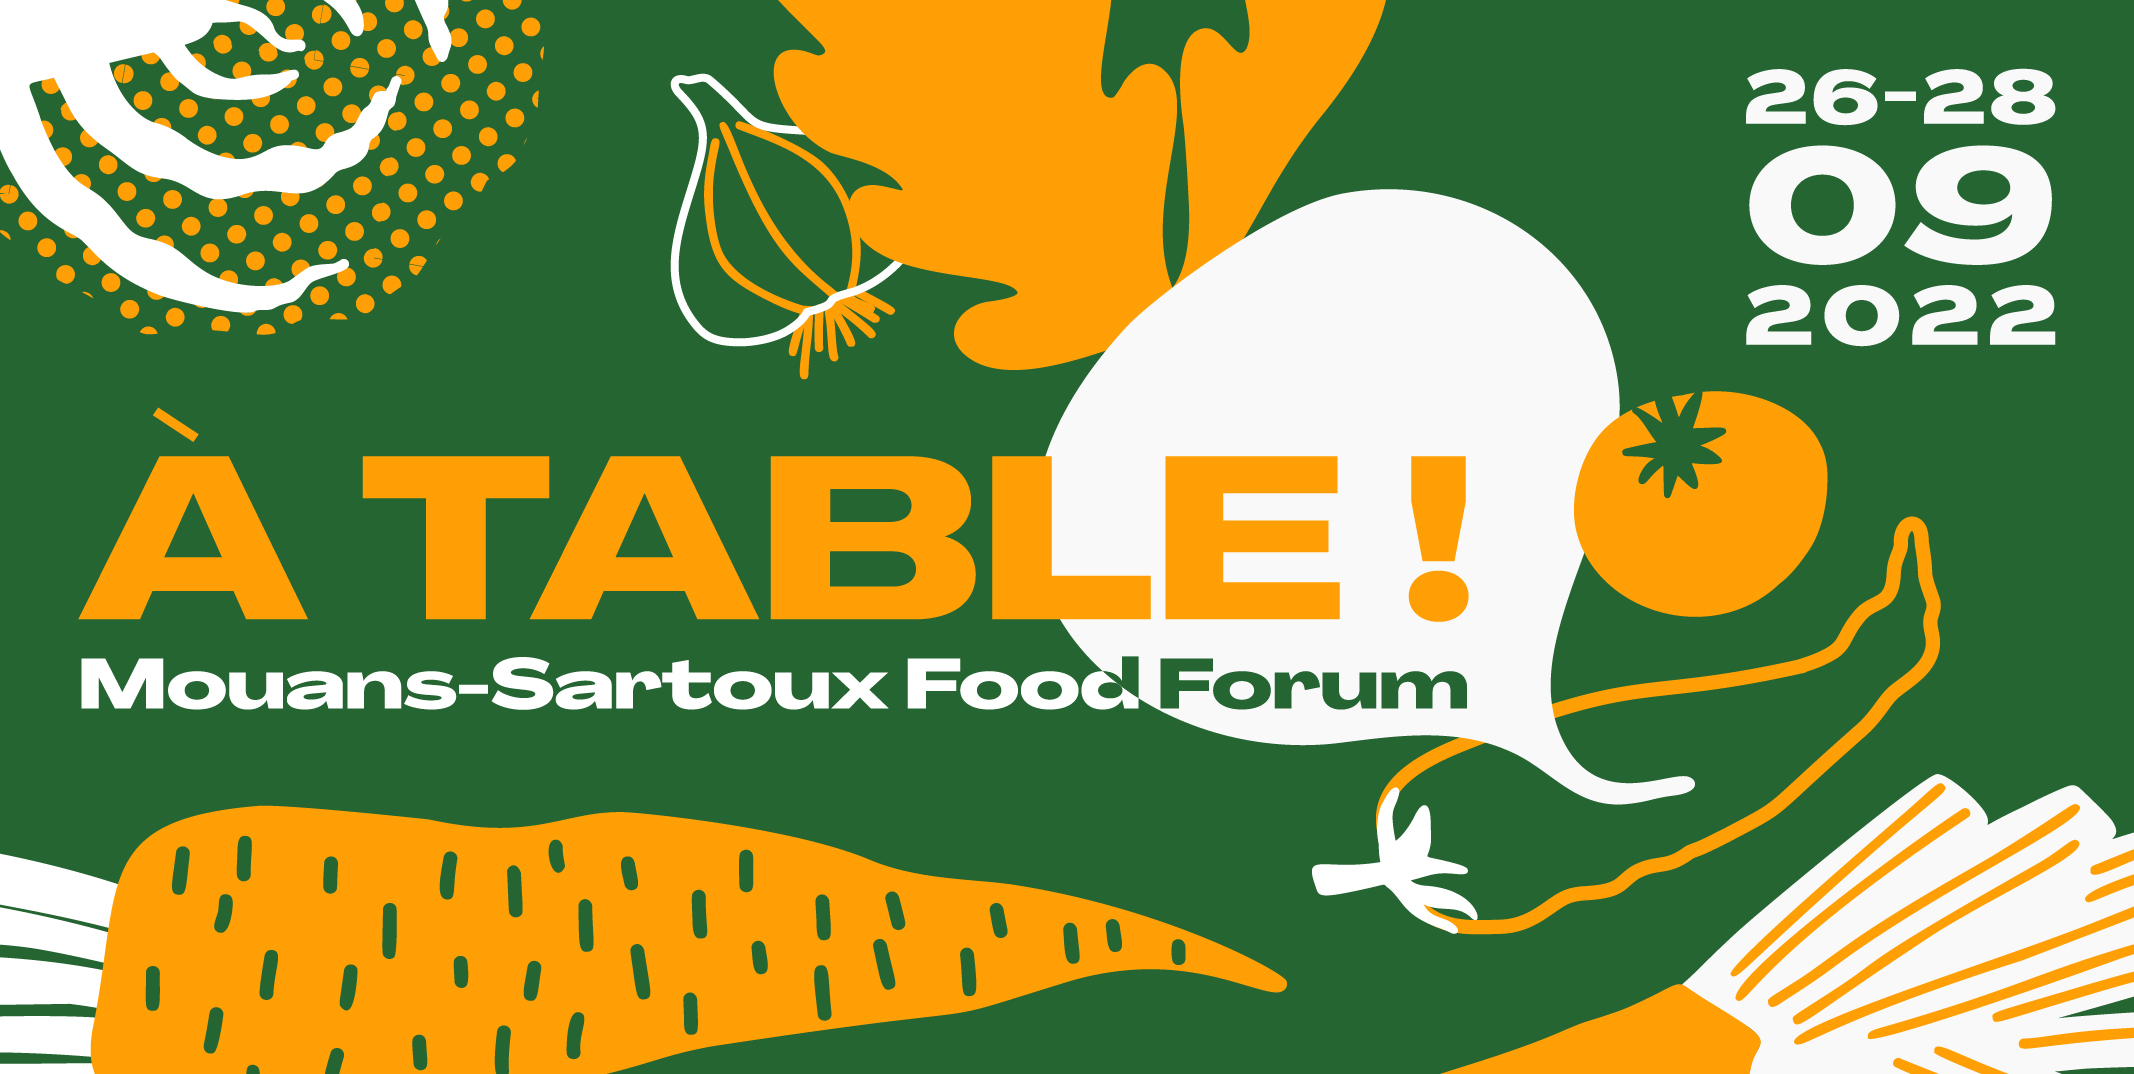 Mouans-Sartoux Food Forum